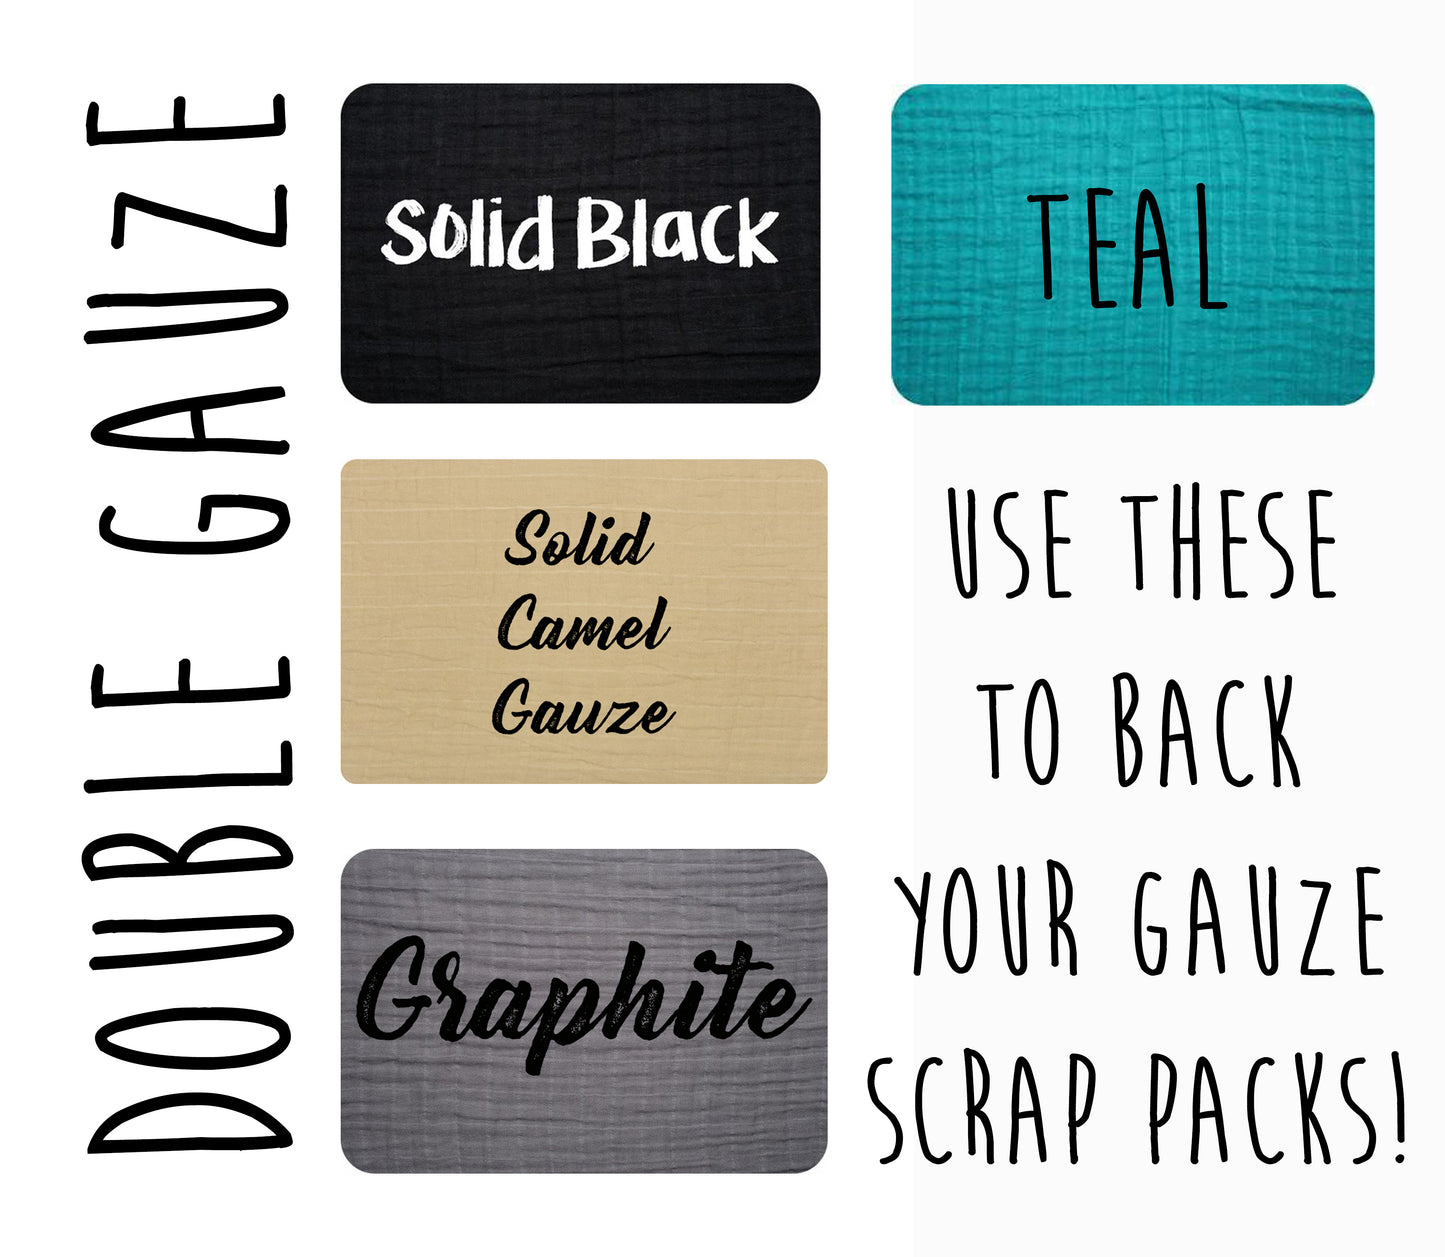 Retail - Cotton Gauze solids - 5 colors available - Black, Graphite, Teal,